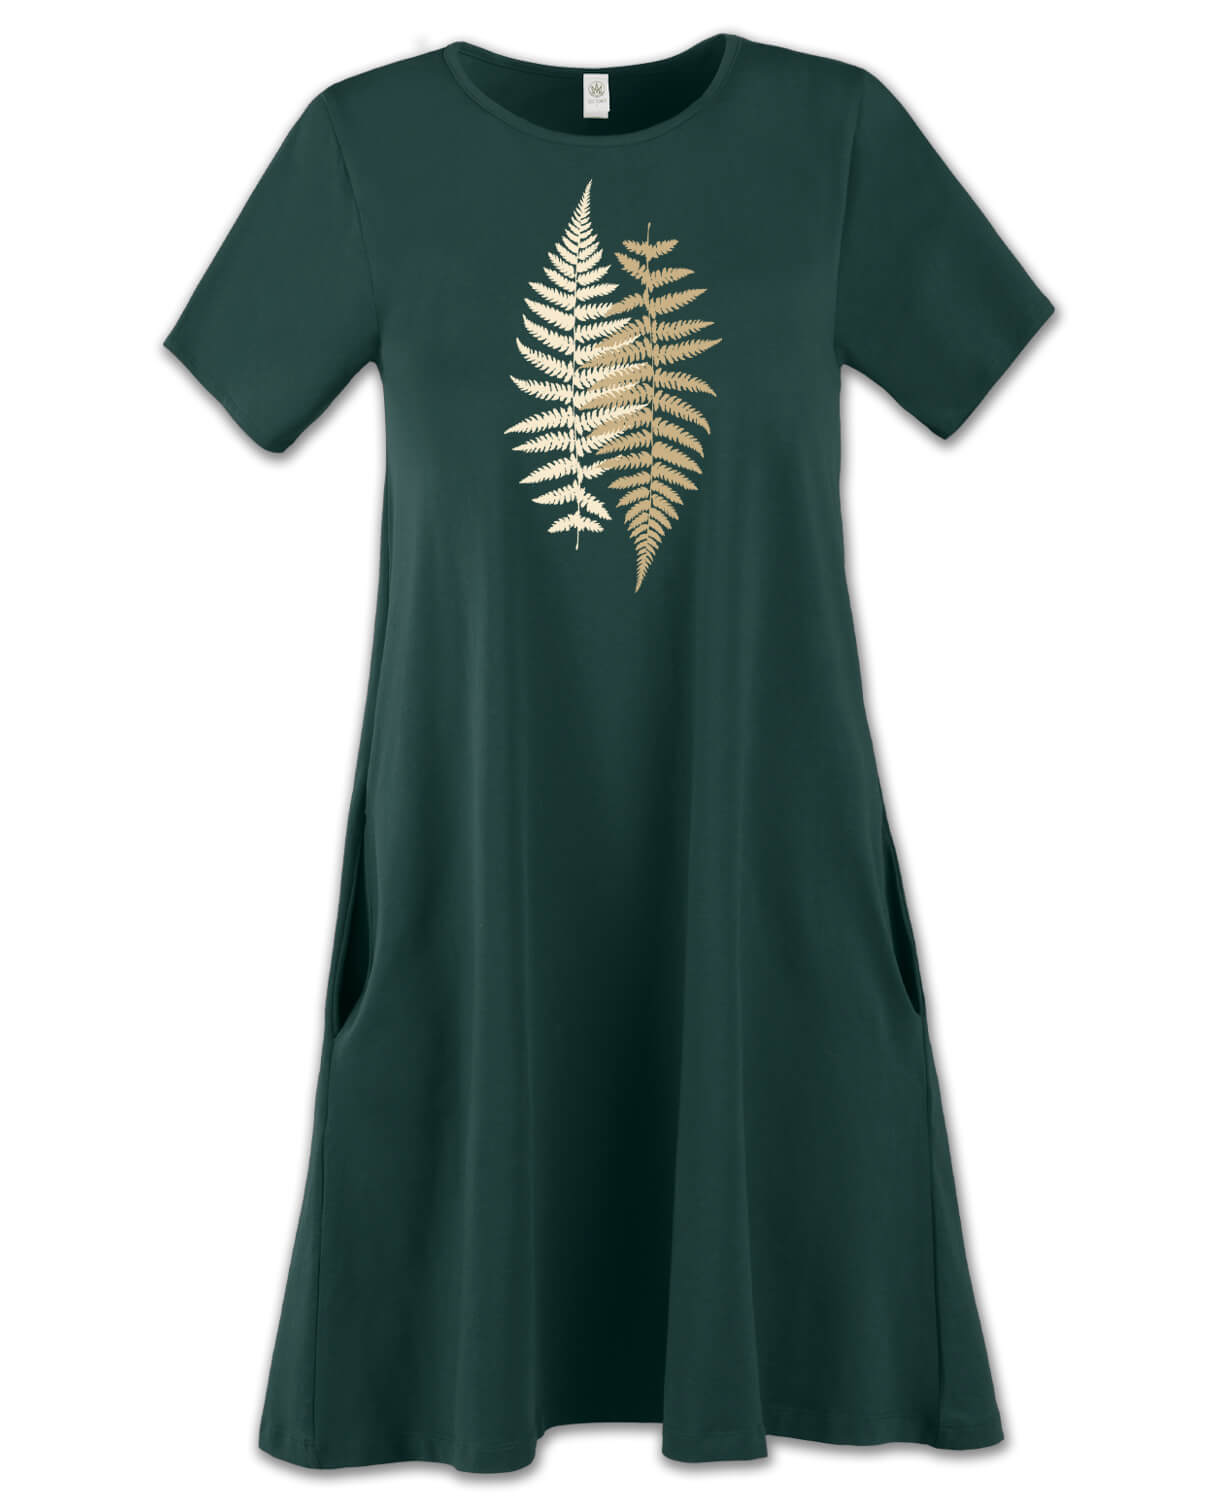 NEW! Ferns T-Shirt Dress